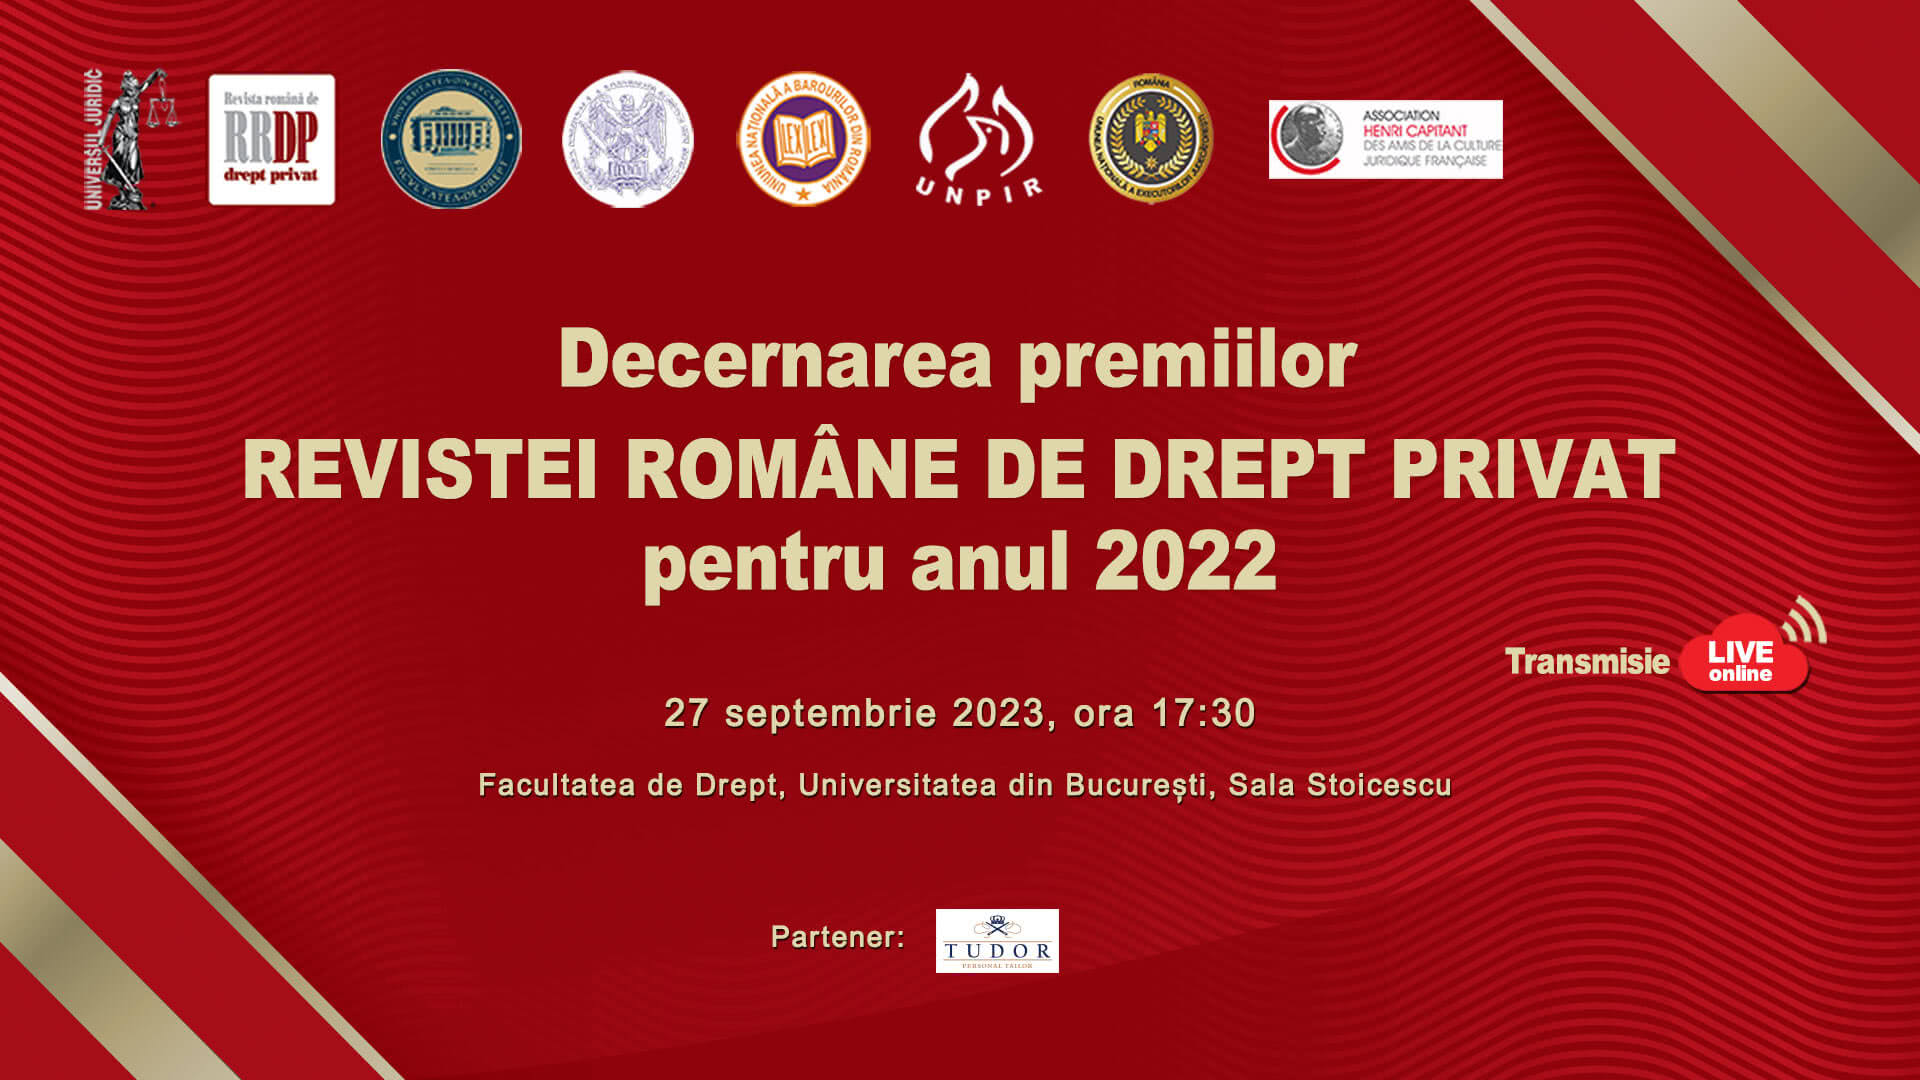 Festivitatea de decernare a premiilor Revistei Române de Drept Privat pentru anul 2022